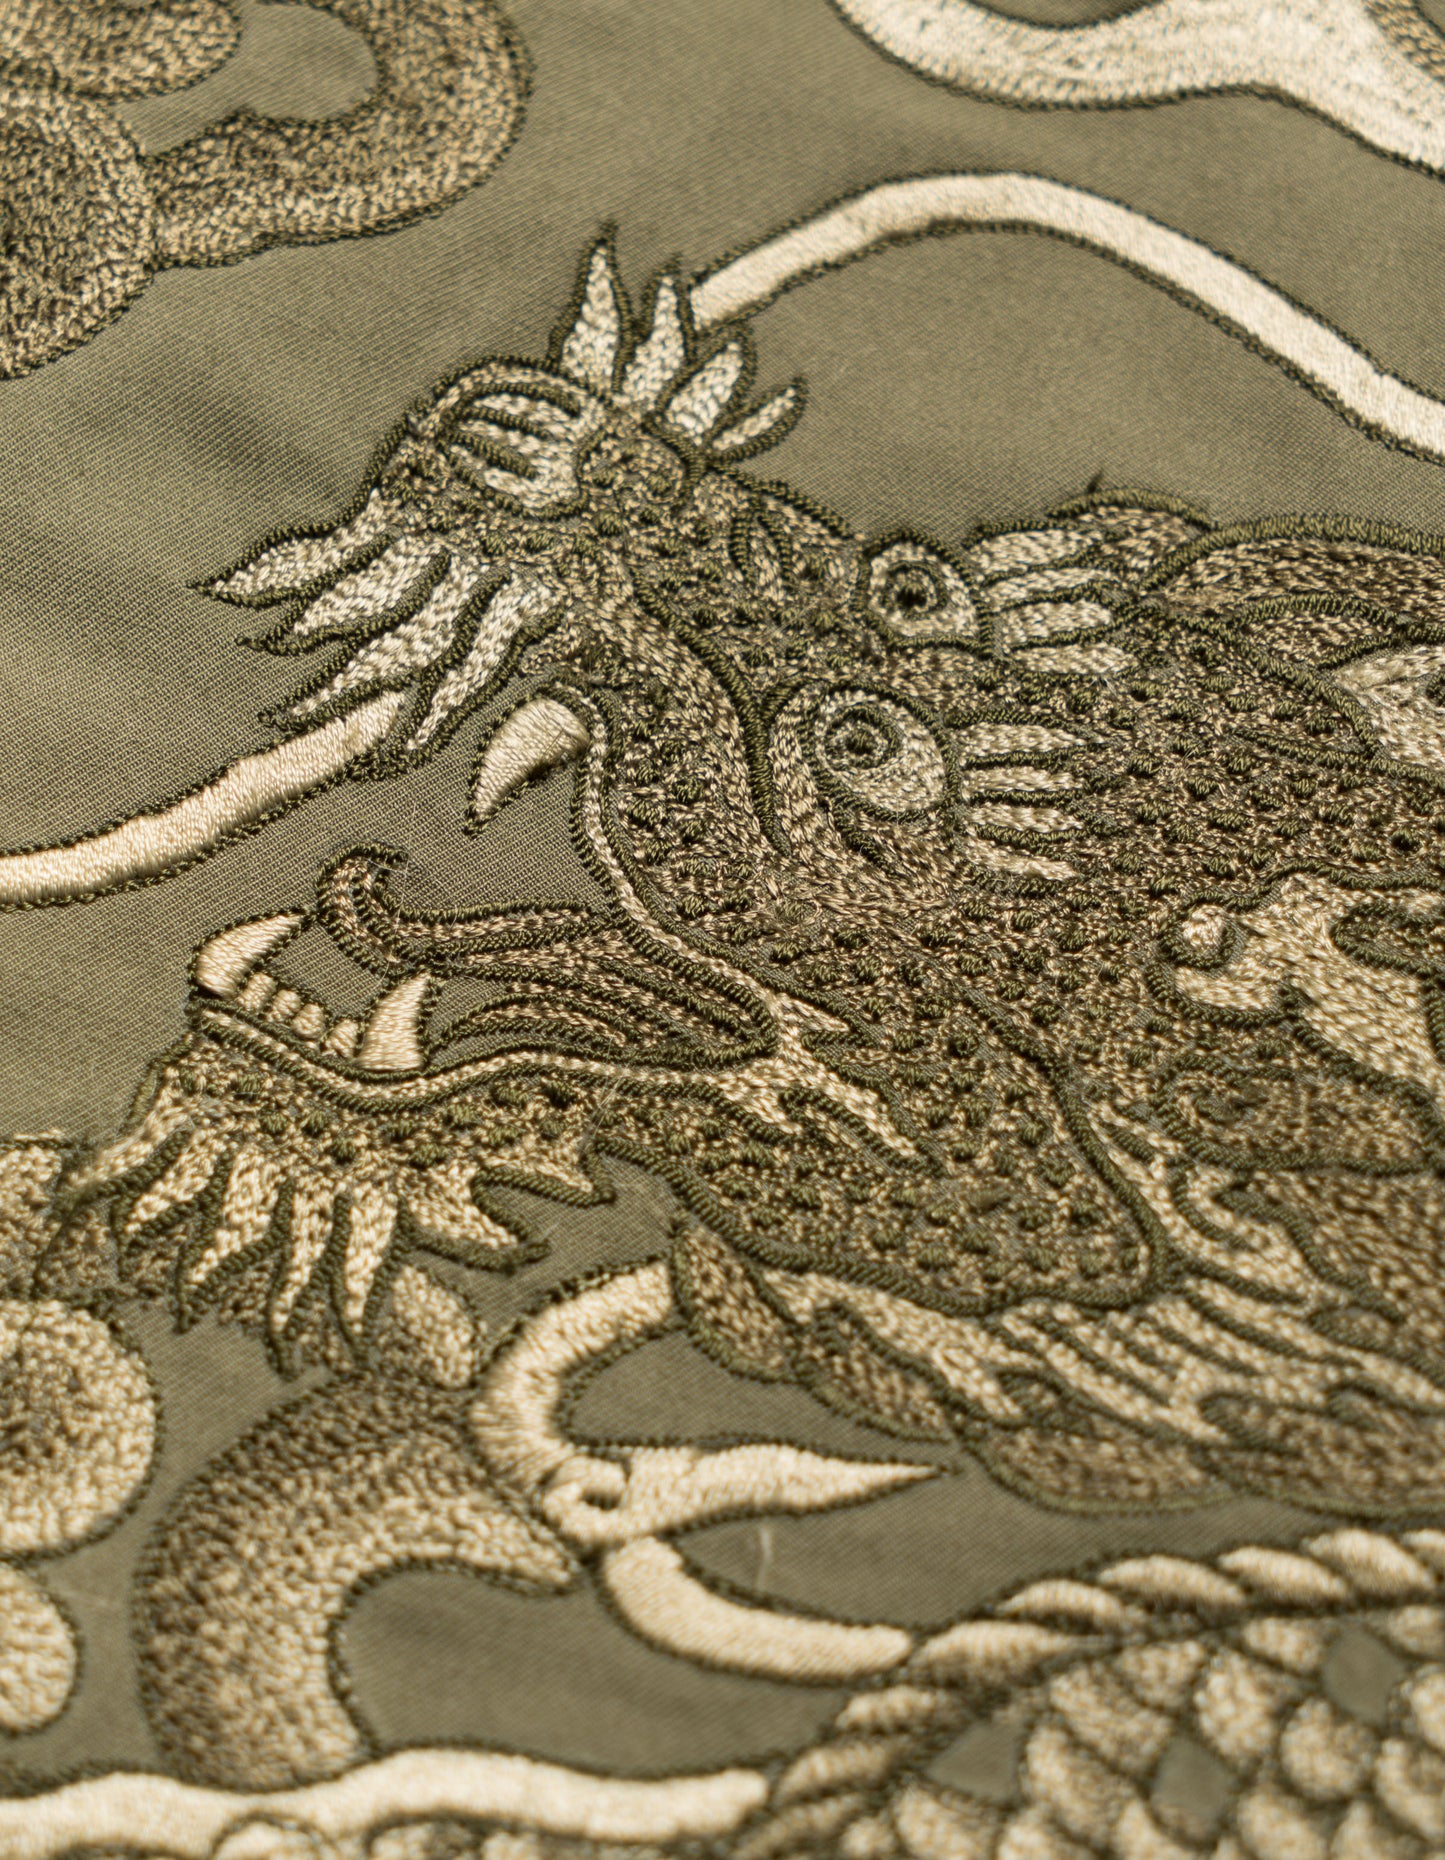 5128 Cloud Dragon Embroidered Snoshorts Olive OG-107F